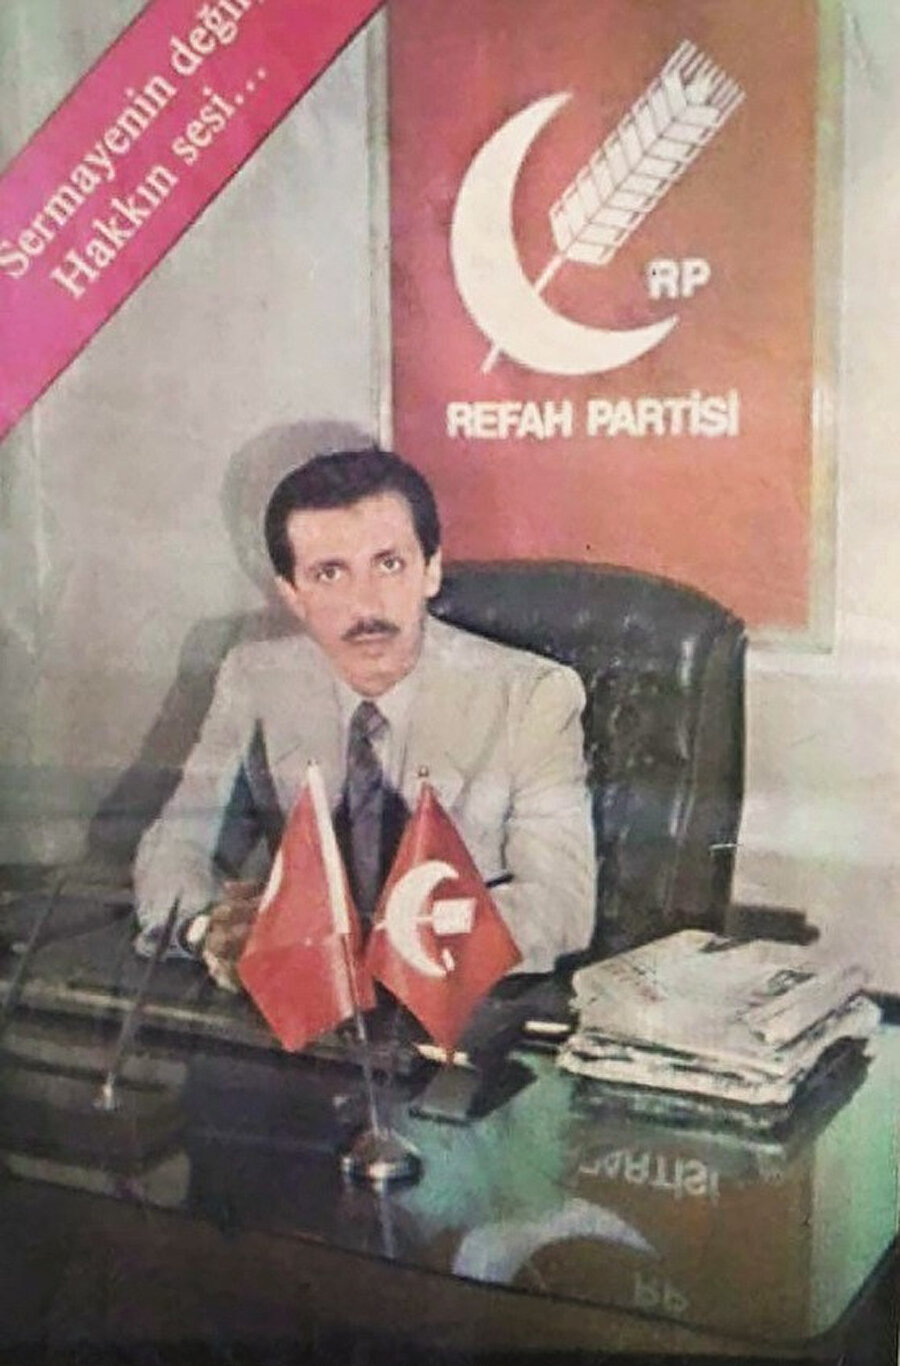 1983 yılında kurulan Refah Partisi ile fiilî siyasete geri dönen Recep Tayyip Erdoğan, 1984 yılında Refah Partisi Beyoğlu İlçe Başkanı seçildi. 1985 yılında Refah Partisi İstanbul İl Başkanı ve Refah Partisi MKYK üyesi oldu. 